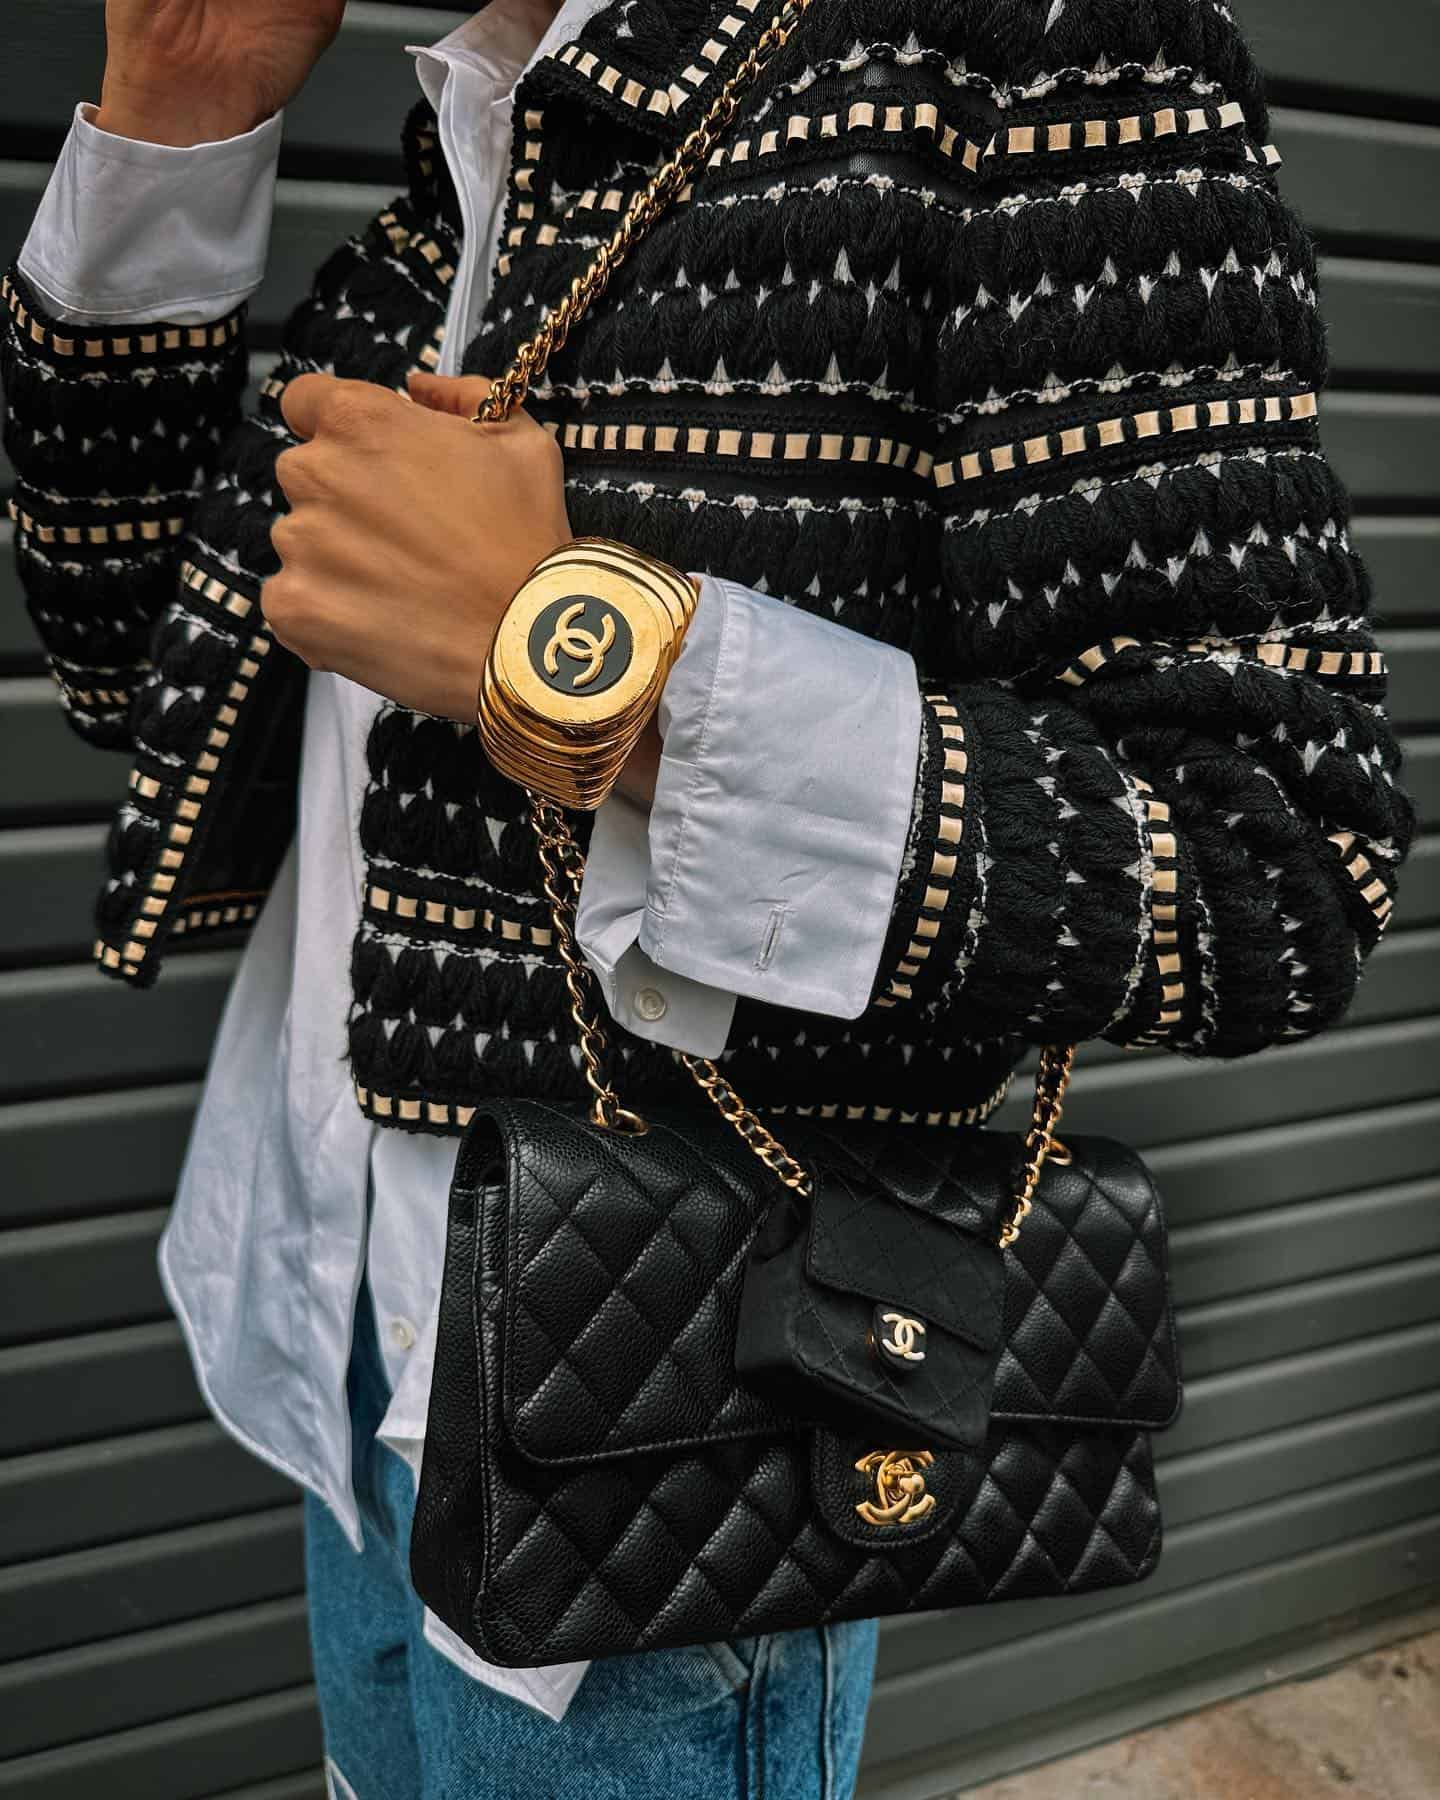 Bløde fødder melodisk at ringe 5 Reasons To Buy a Vintage Chanel Bag • Petite in Paris